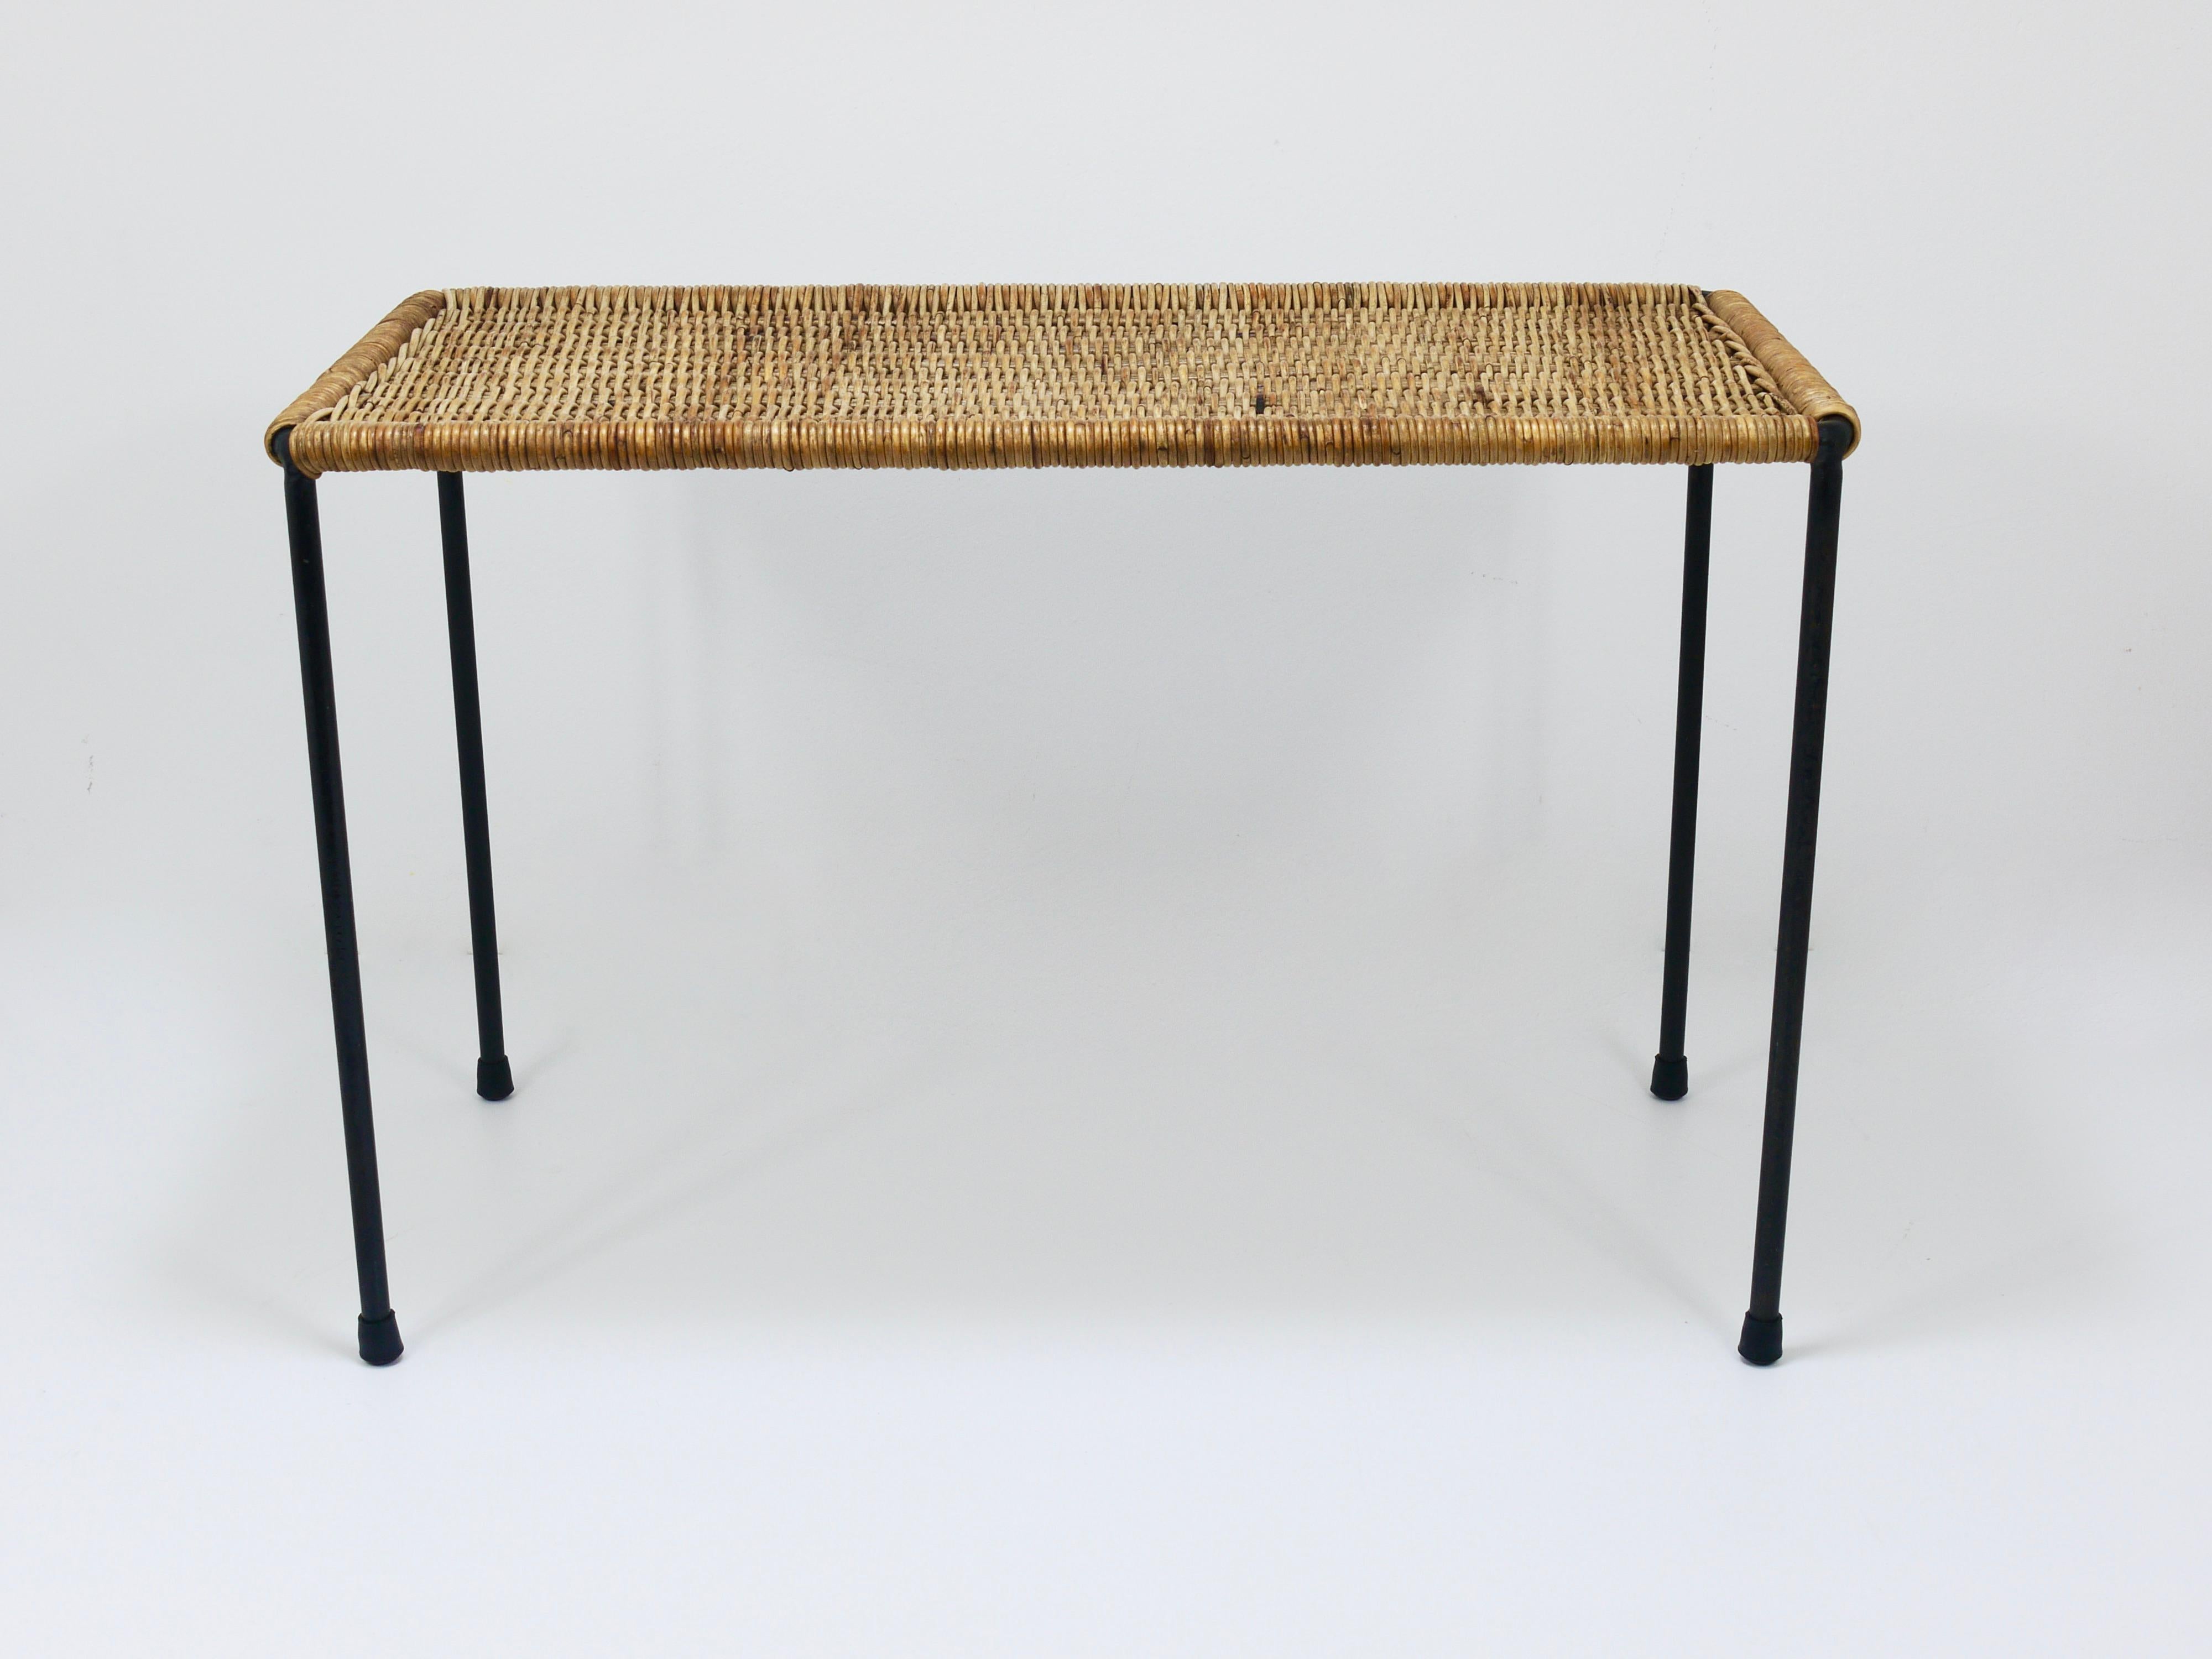 Magnifique table d'appoint / banc rectangulaire du milieu du siècle dernier, datant des années 1950. Cette authentique pièce minimaliste vintage a été conçue par Carl Auböck de Vienne et a été fabriquée par Werkstätte Auböck, tressée à la main à